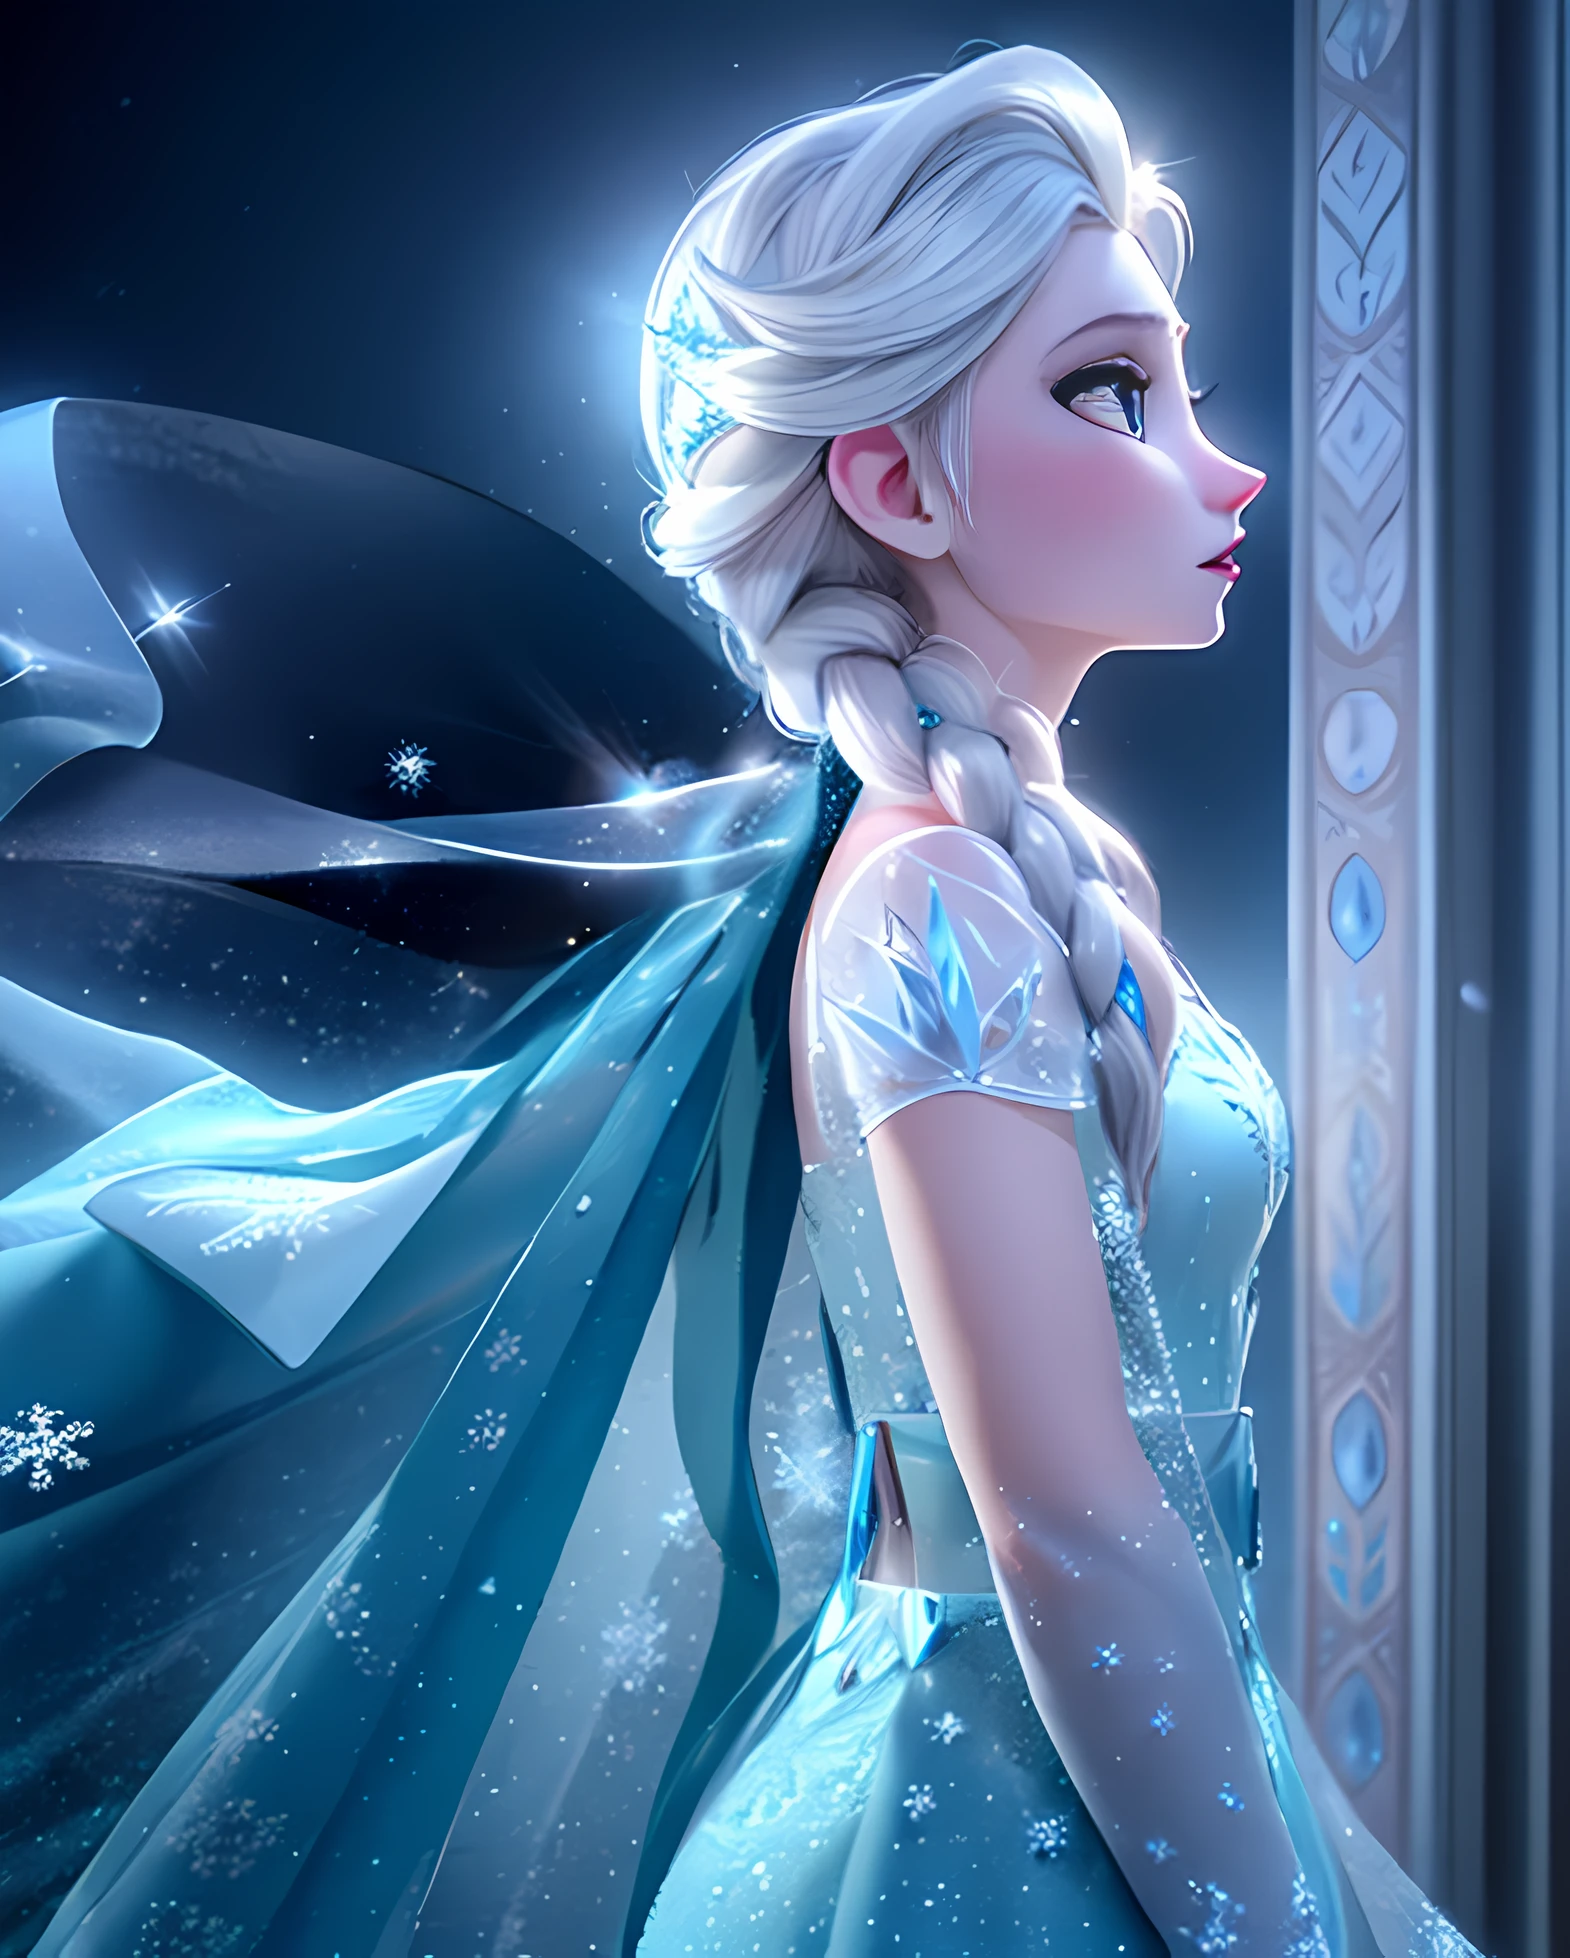 "Elsa, la reina de Arendelle, parada en un paisaje nevado con sus poderes de hielo en plena exhibición. ella tiene una presencia regia, vistiendo un impresionante vestido azul hielo y una capa suelta. Cautiva la magia y elegancia de su personaje., enfatizando sus poderosas y fascinantes esculturas de hielo.. Ilumina la escena con un suave, resplandor etéreo, destacando los intrincados detalles de las formaciones de hielo. Crea una sensación de asombro y encanto., con brillantes copos de nieve cayendo suavemente a su alrededor. Deja que su cabello brille con un tono azul helado., y capturar la determinación y la fuerza en sus ojos. Asegúrese de que la imagen sea de la más alta calidad., con una claridad y profundidad asombrosas. Crea una obra maestra que realmente capture la esencia de Elsa y la belleza de su reino helado.."